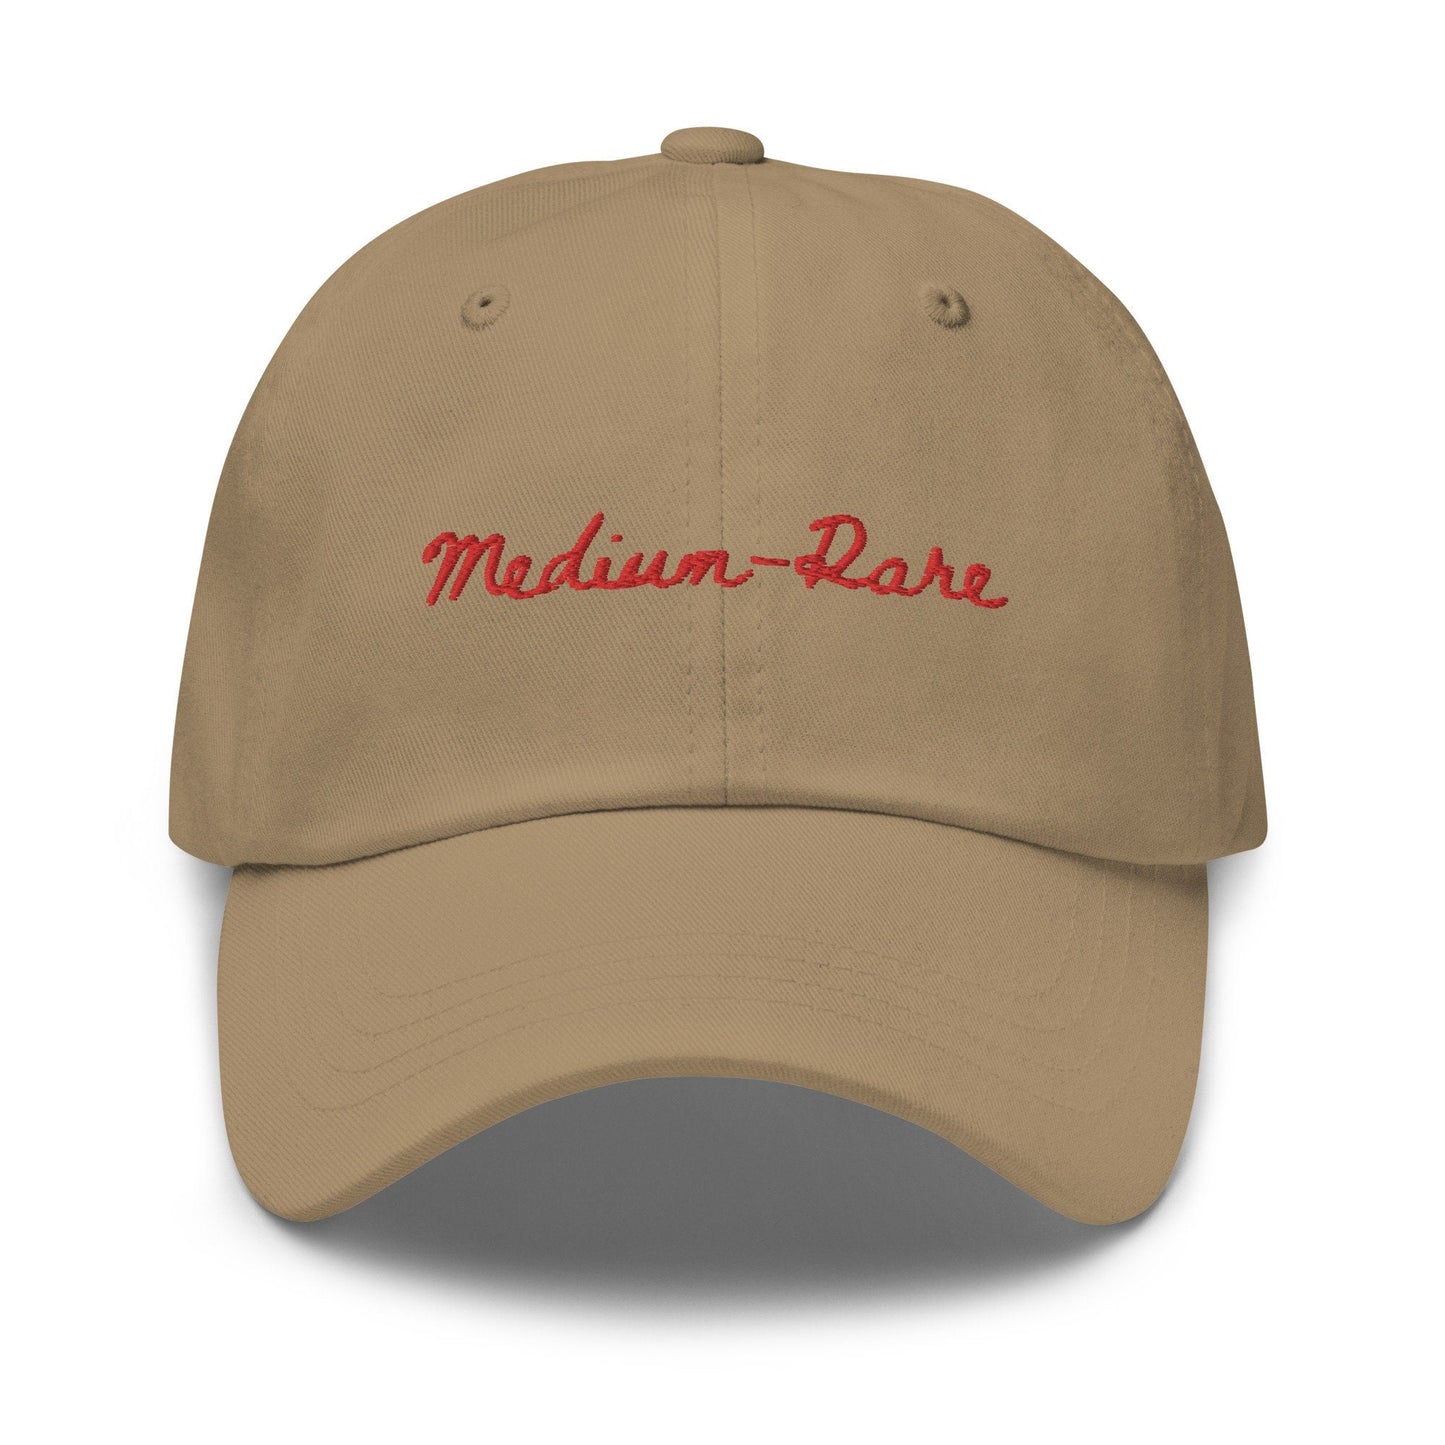 Medium Rare Steak Dad Hat - Steak Doneness - Gift for Dads, bbq fans, steak lovers, carnivores - Minimalist Cotton Embroidered Cap